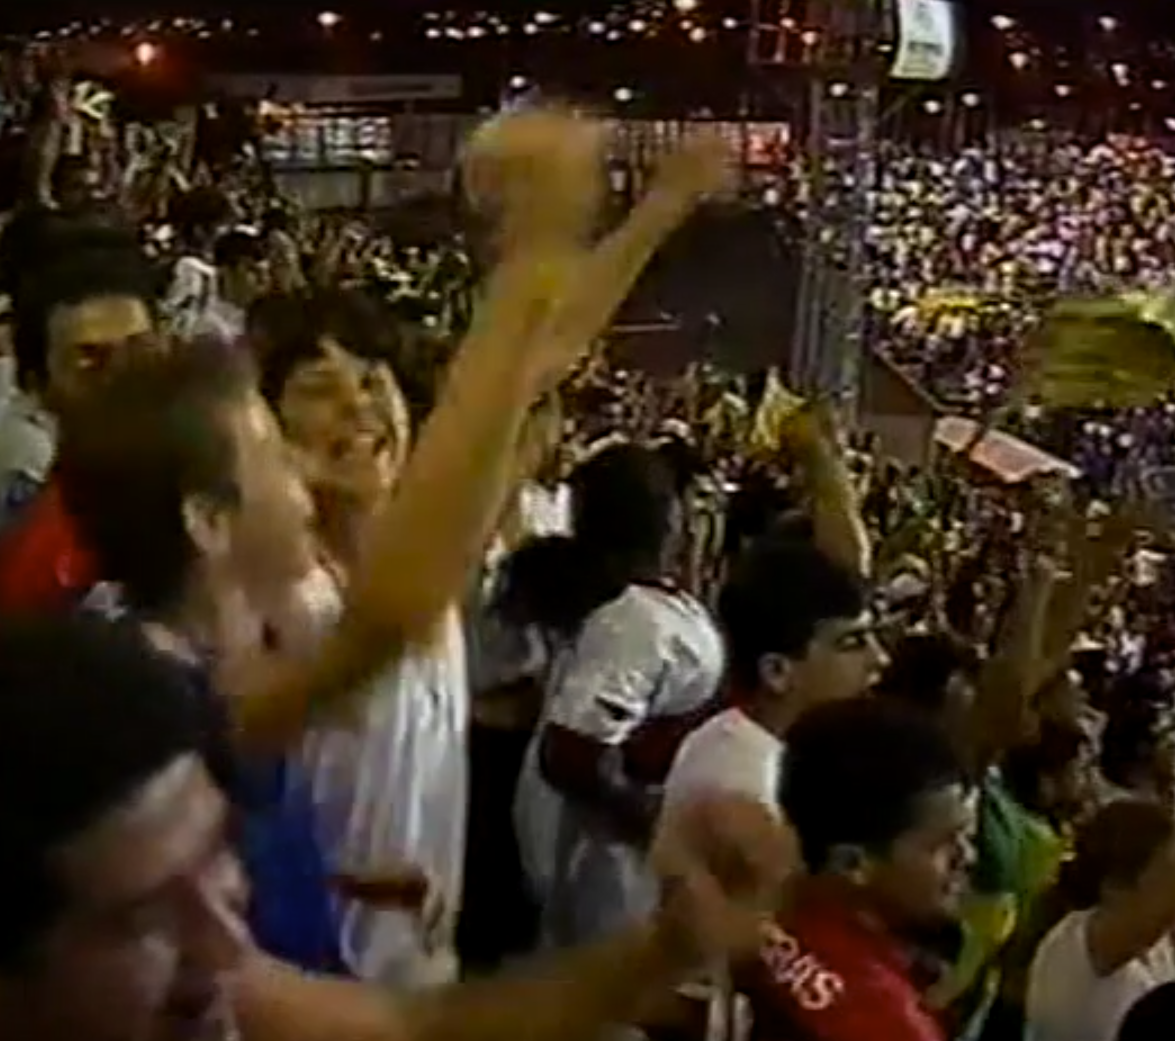 Brazylia U23 - Polska U23 3:1 (26.06.1996)